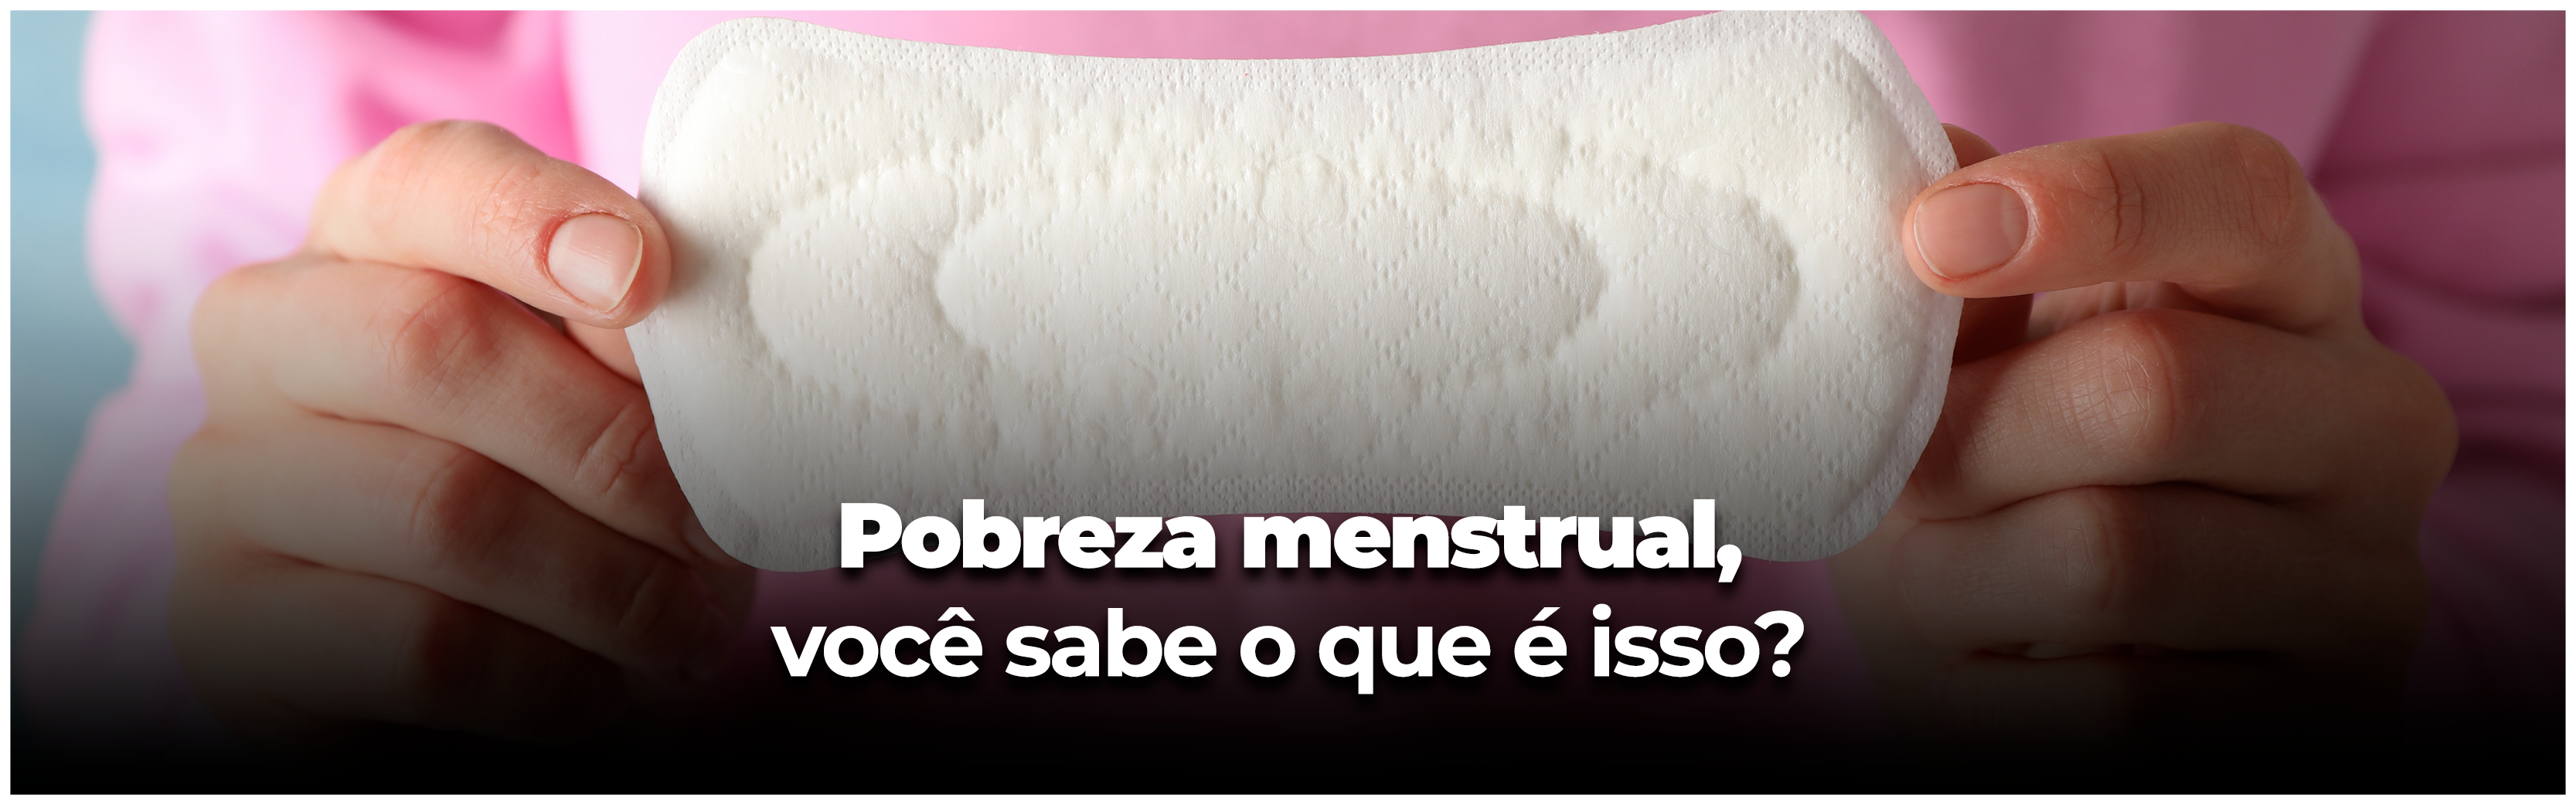 Saiba o que é pobreza menstrual e quais as consequências da falta de acesso a absorventes